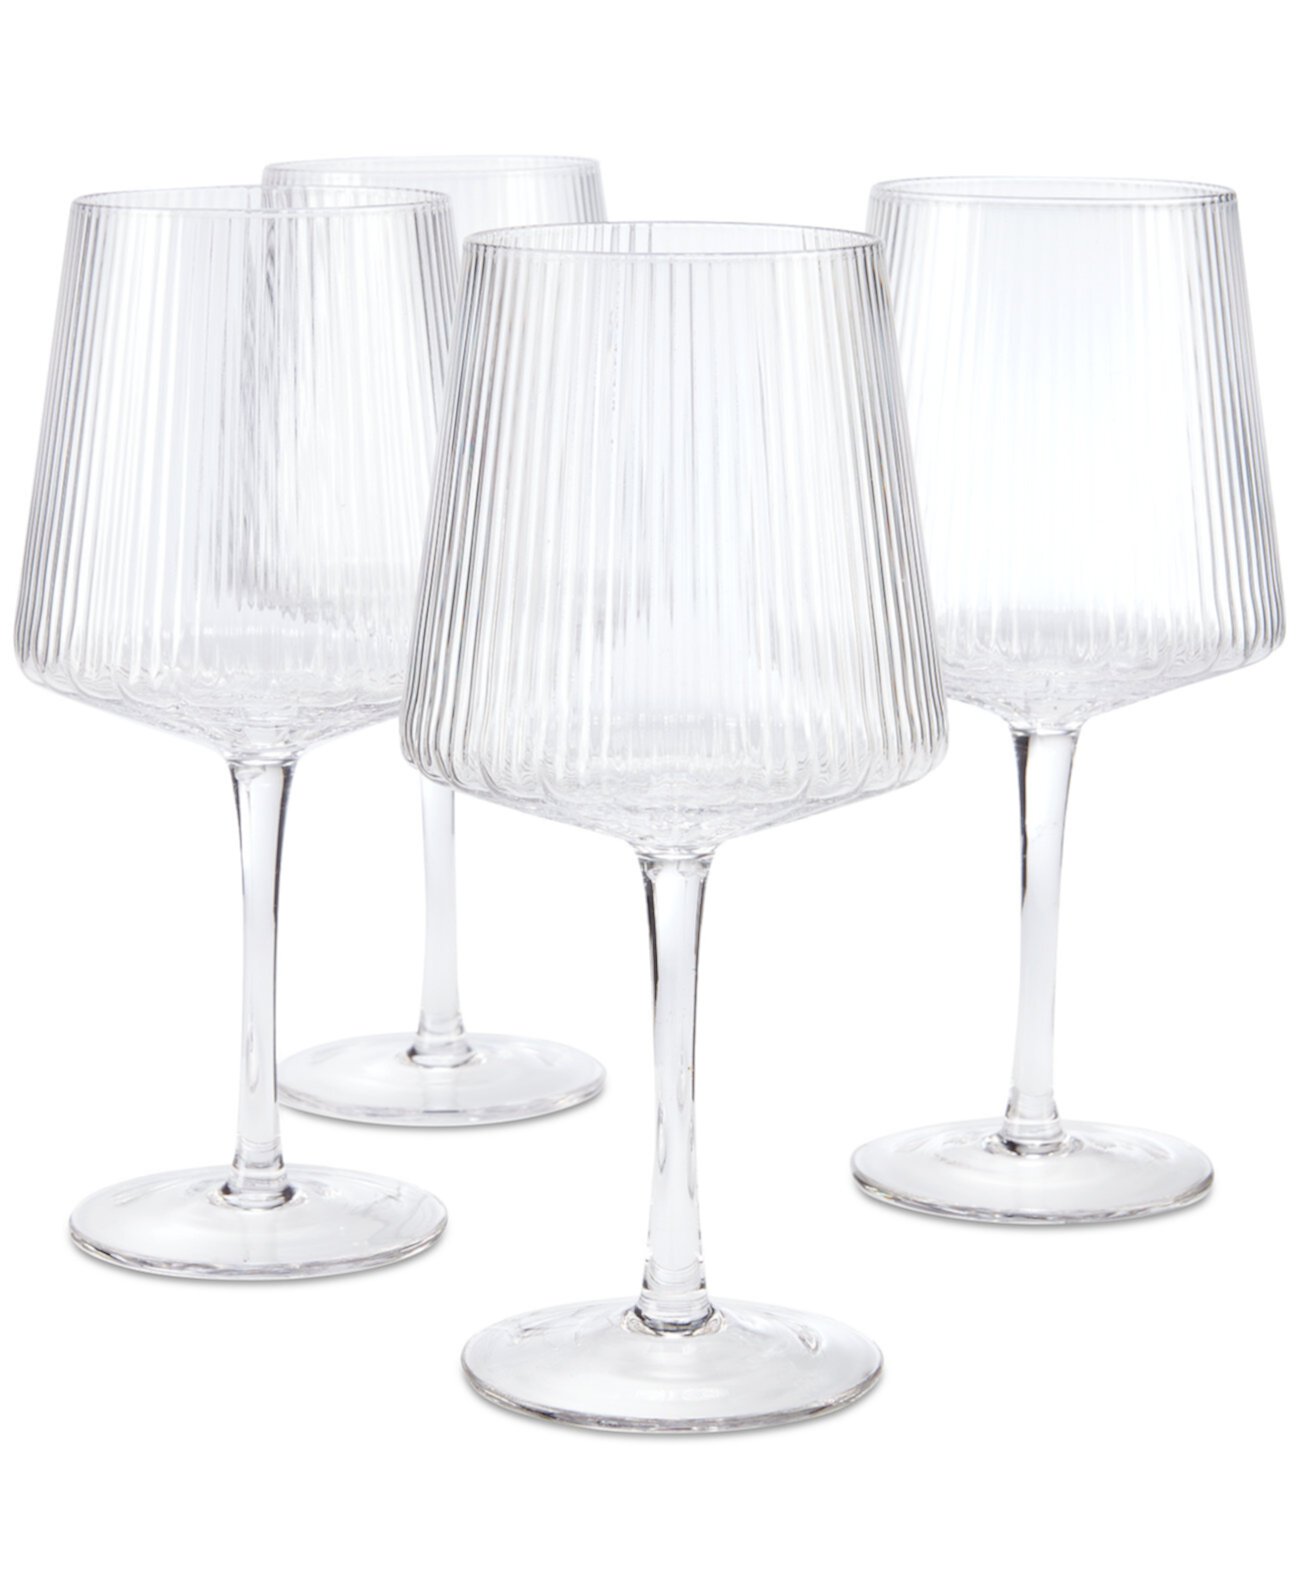 Прозрачные бокалы для вина с рифлением, набор из 4 штук, созданные для Macy's Hotel Collection